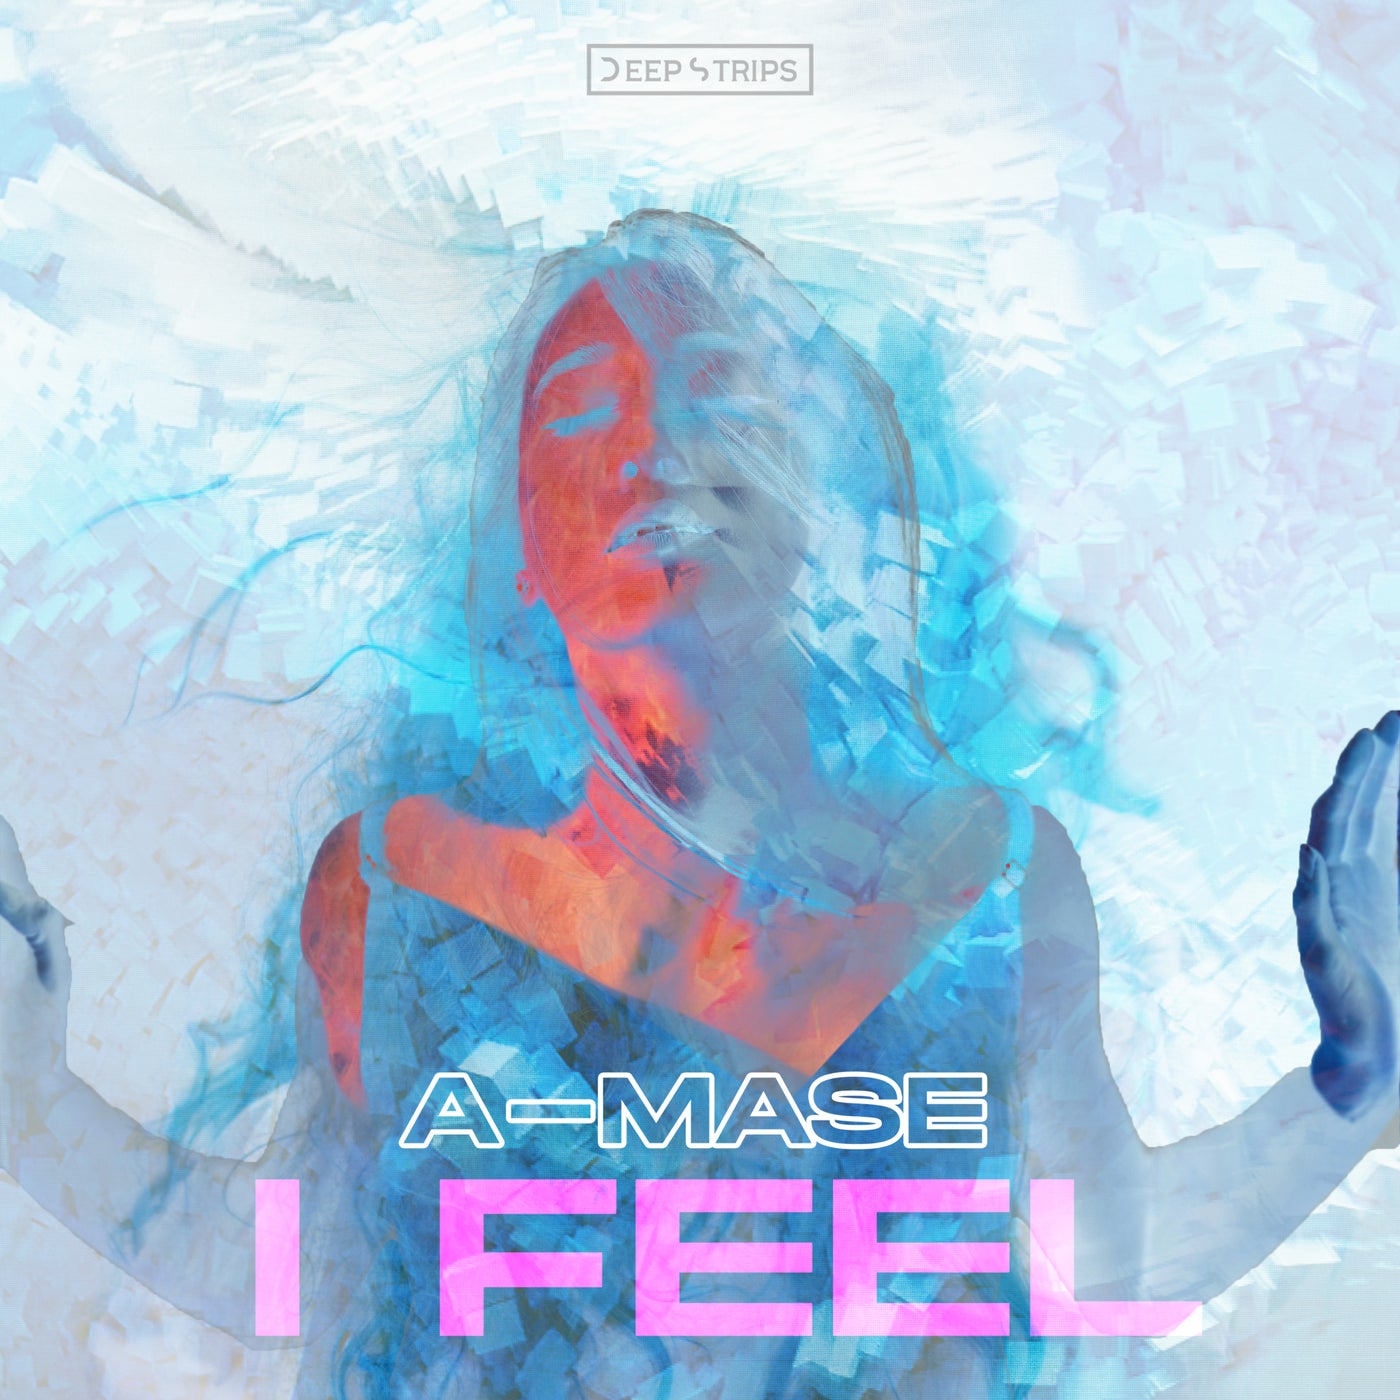 A-Mase - I Feel (Original Mix)